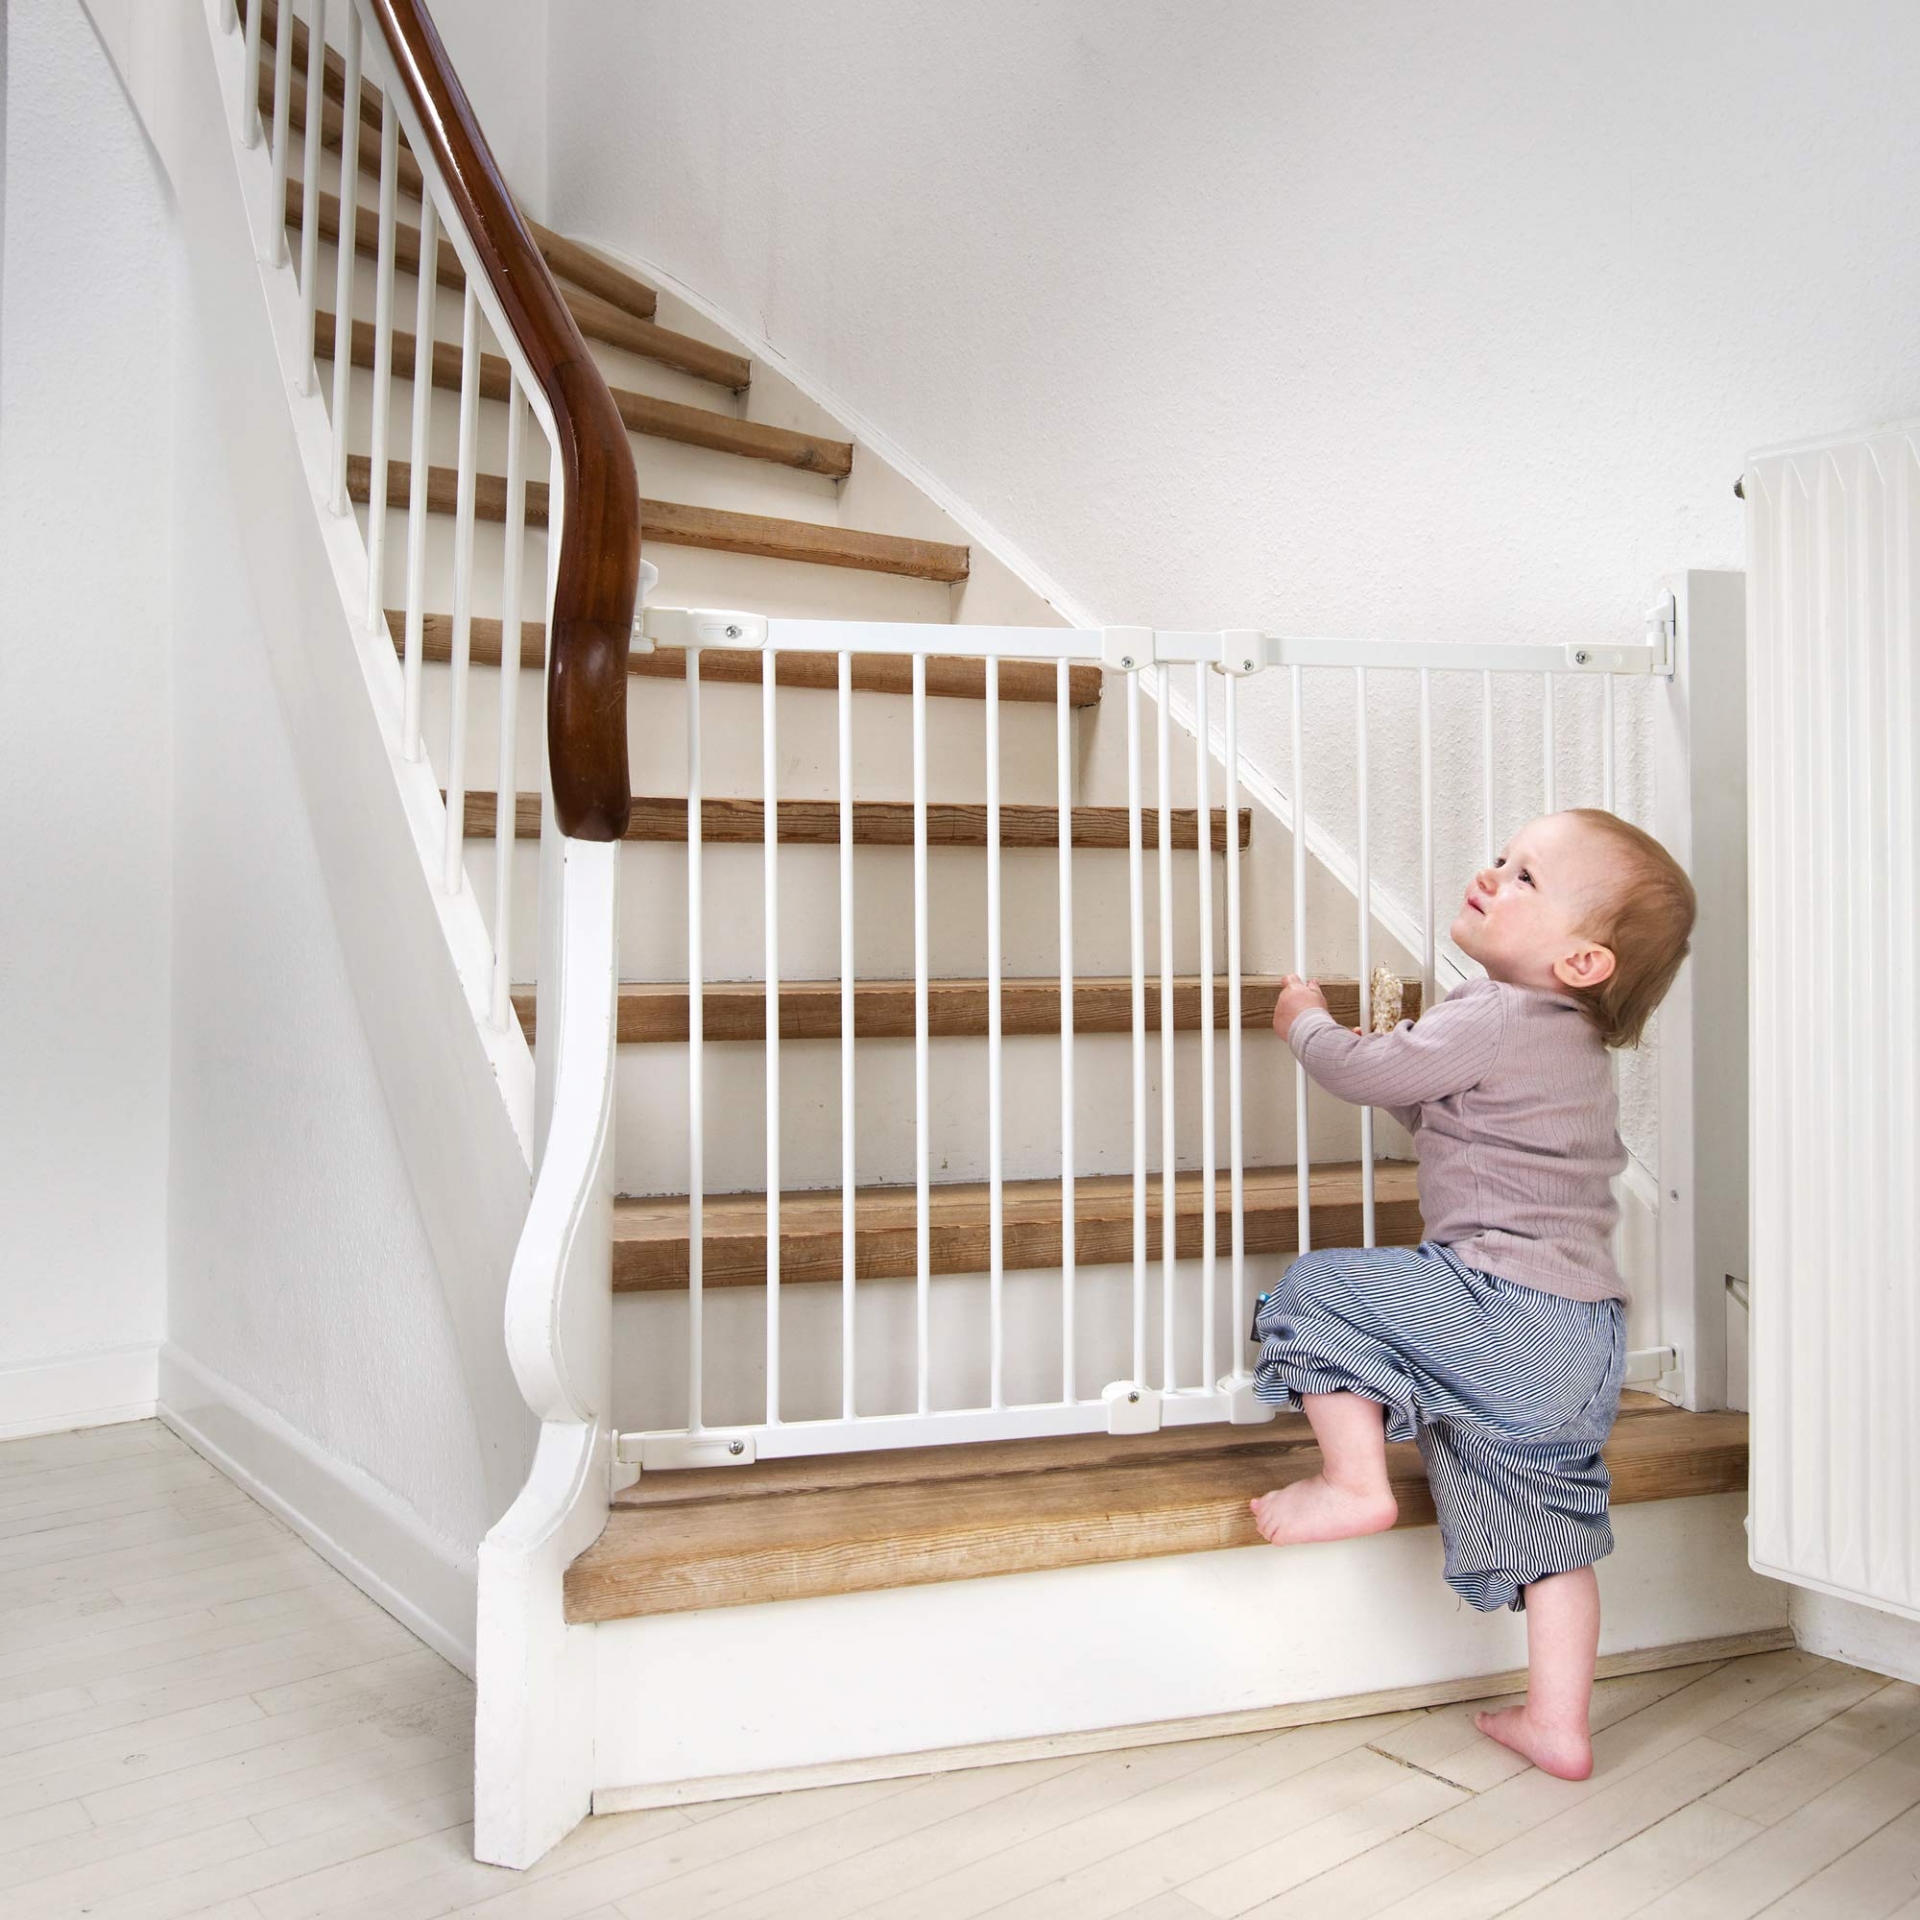 Nếu nhà có trẻ đang tuổi tập đi, cần lắp đặt thanh chắn (cửa chặn) ở đầu cầu thang. 